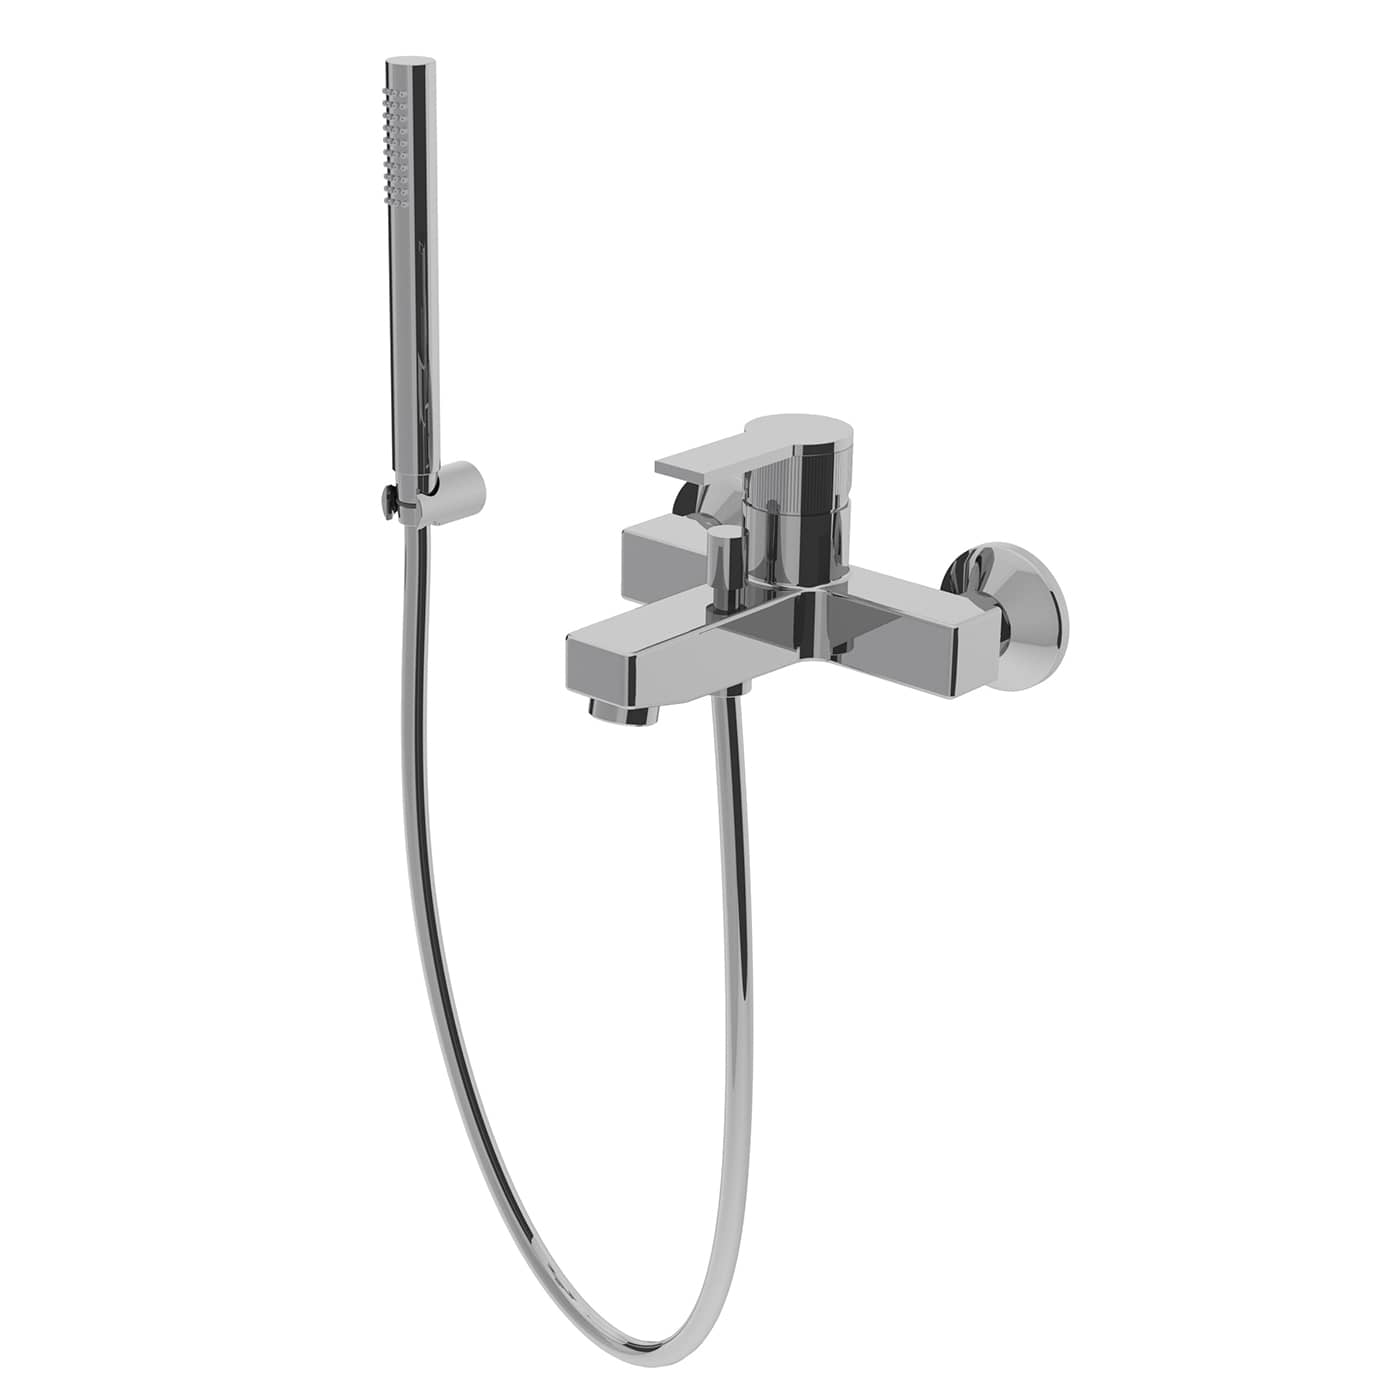 S8VE010RO - Monocomando esterno per vasca con kit doccia